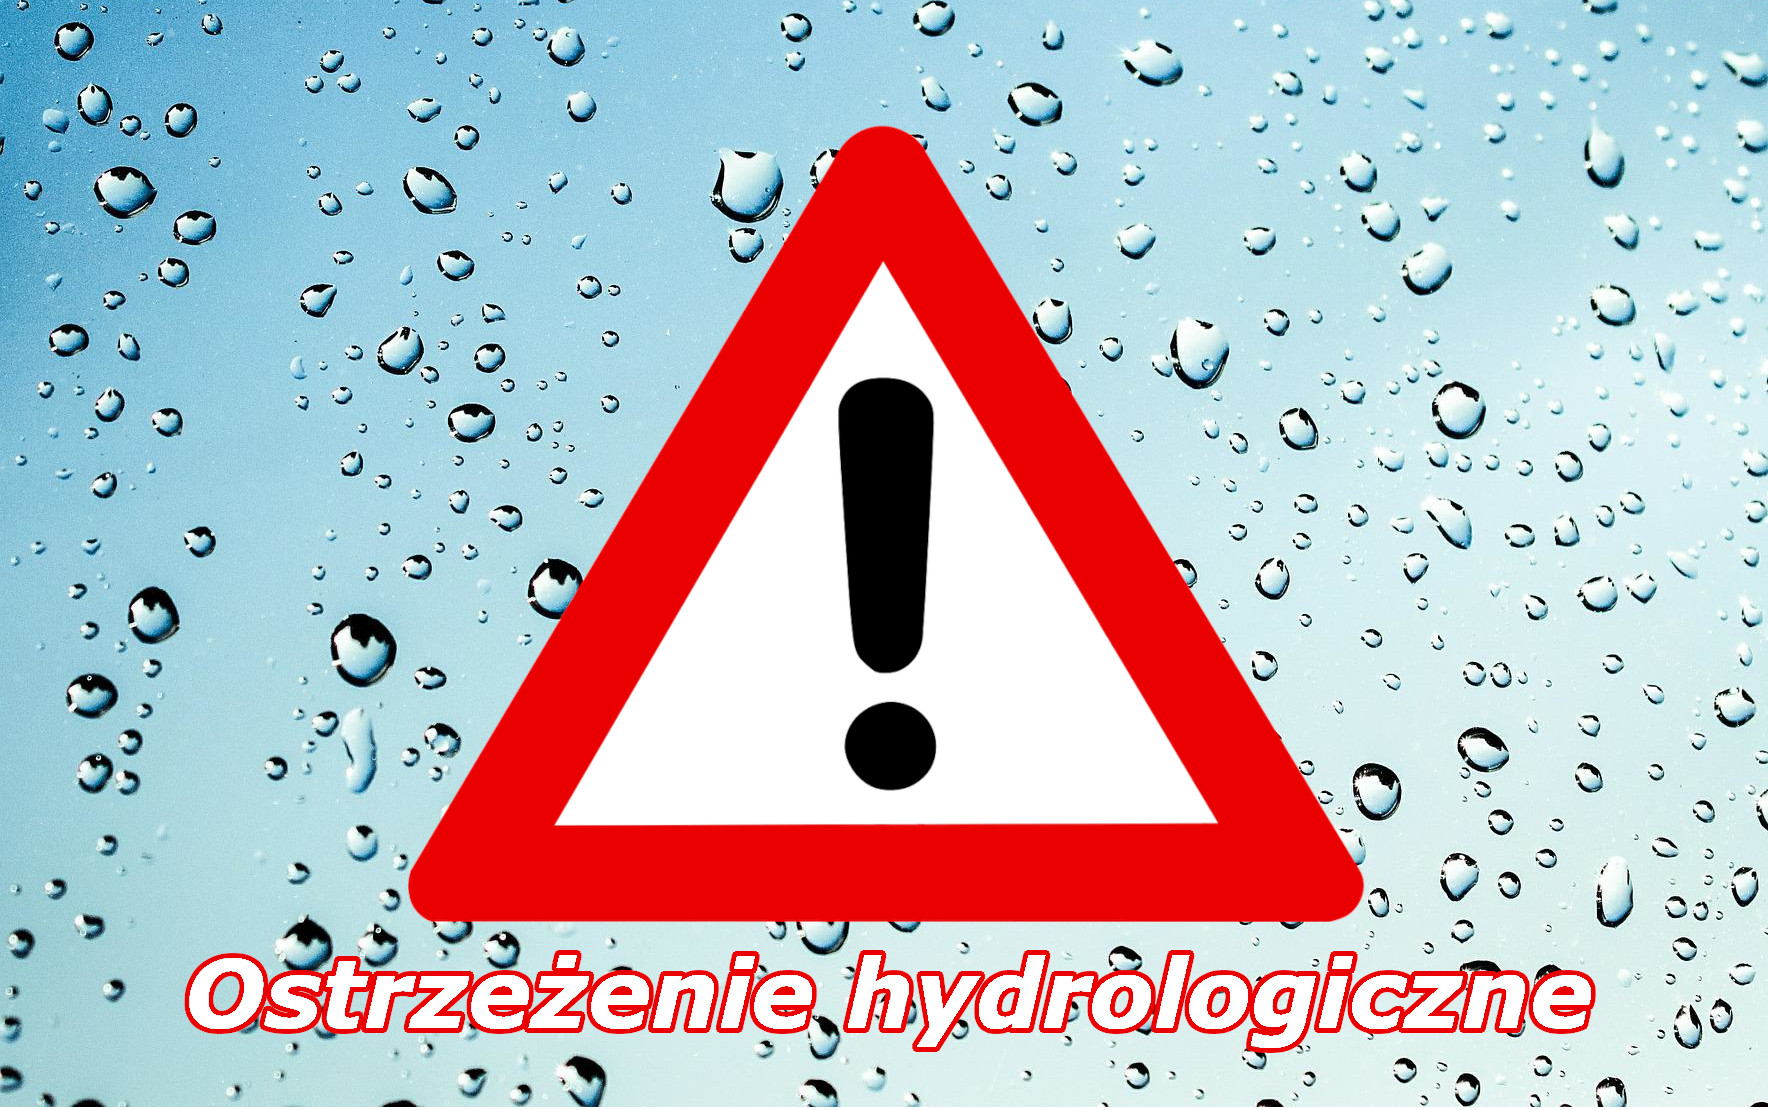 Ostrzeżenie hydrologiczne nr 127 - gwałtowny wzrost stanów wody